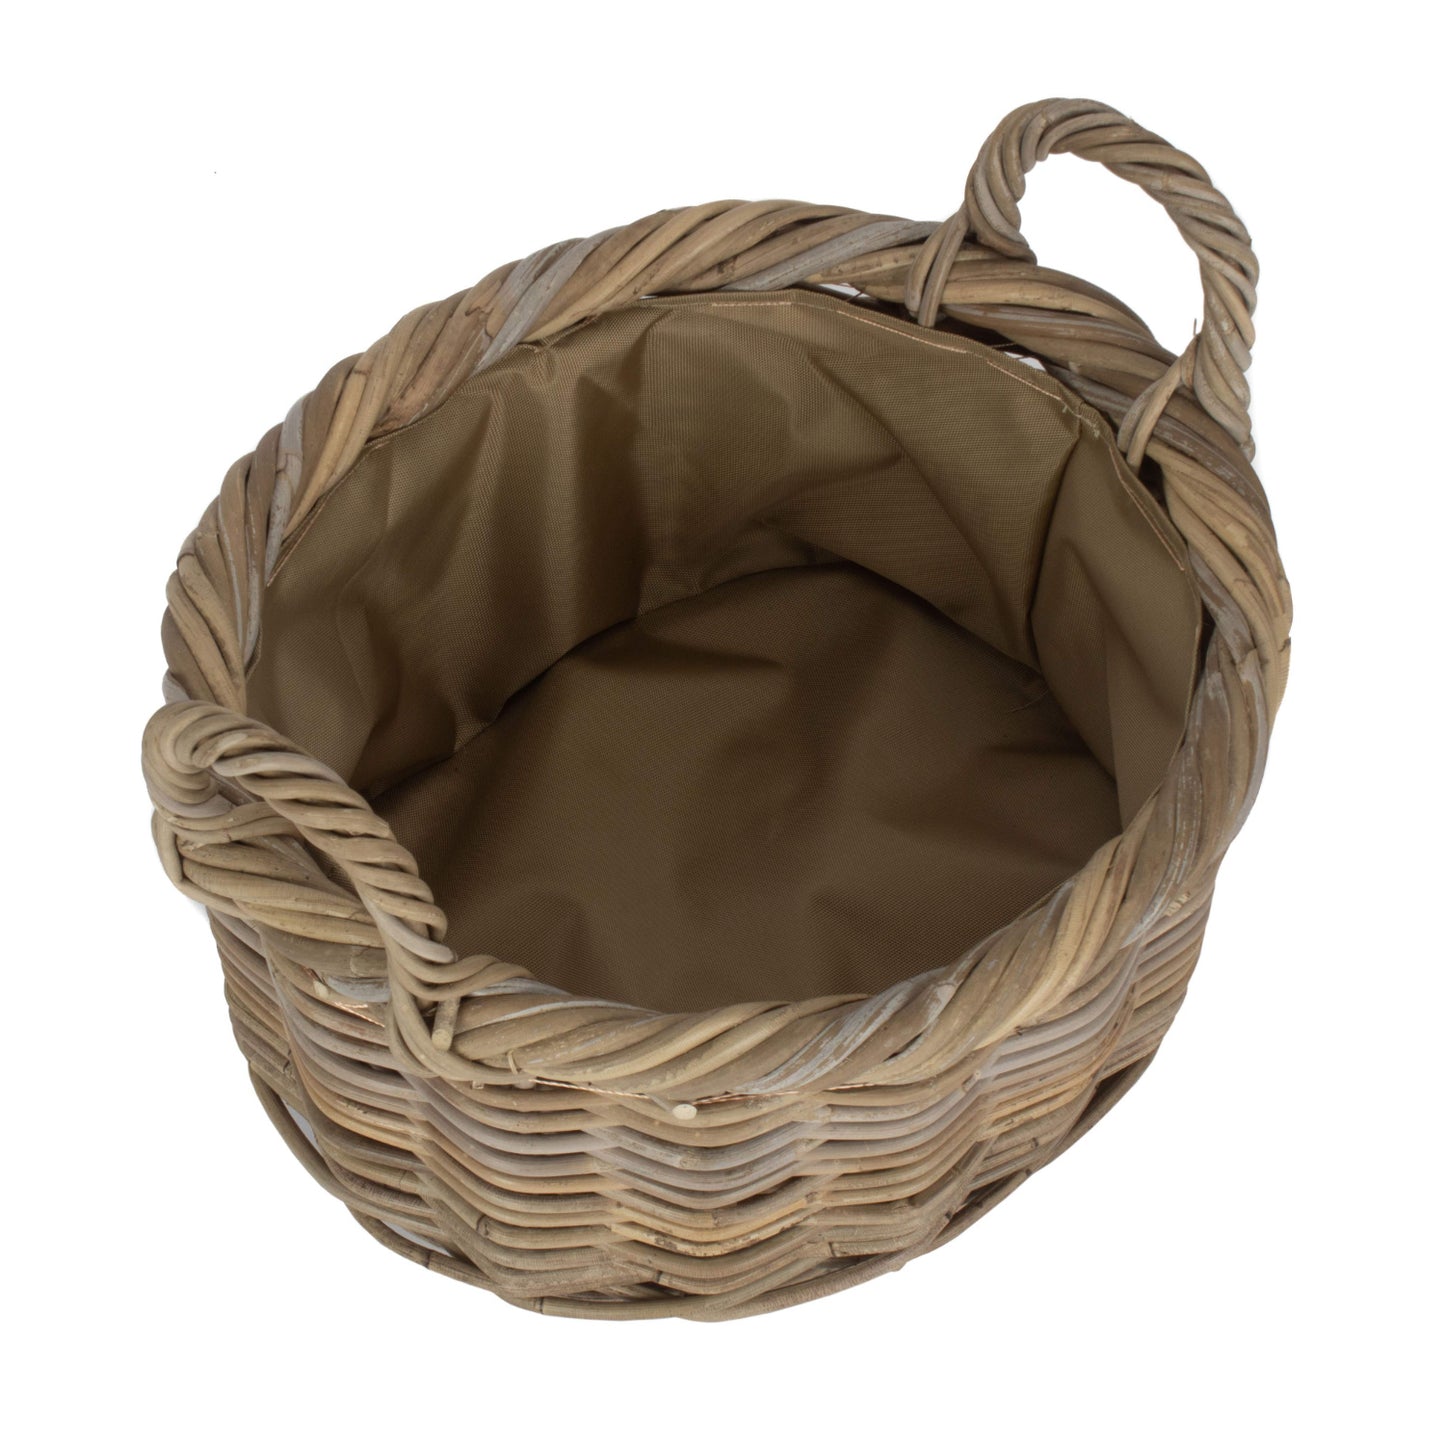 Size 1 Oval Rattan Storage Basket With Cordura Lining